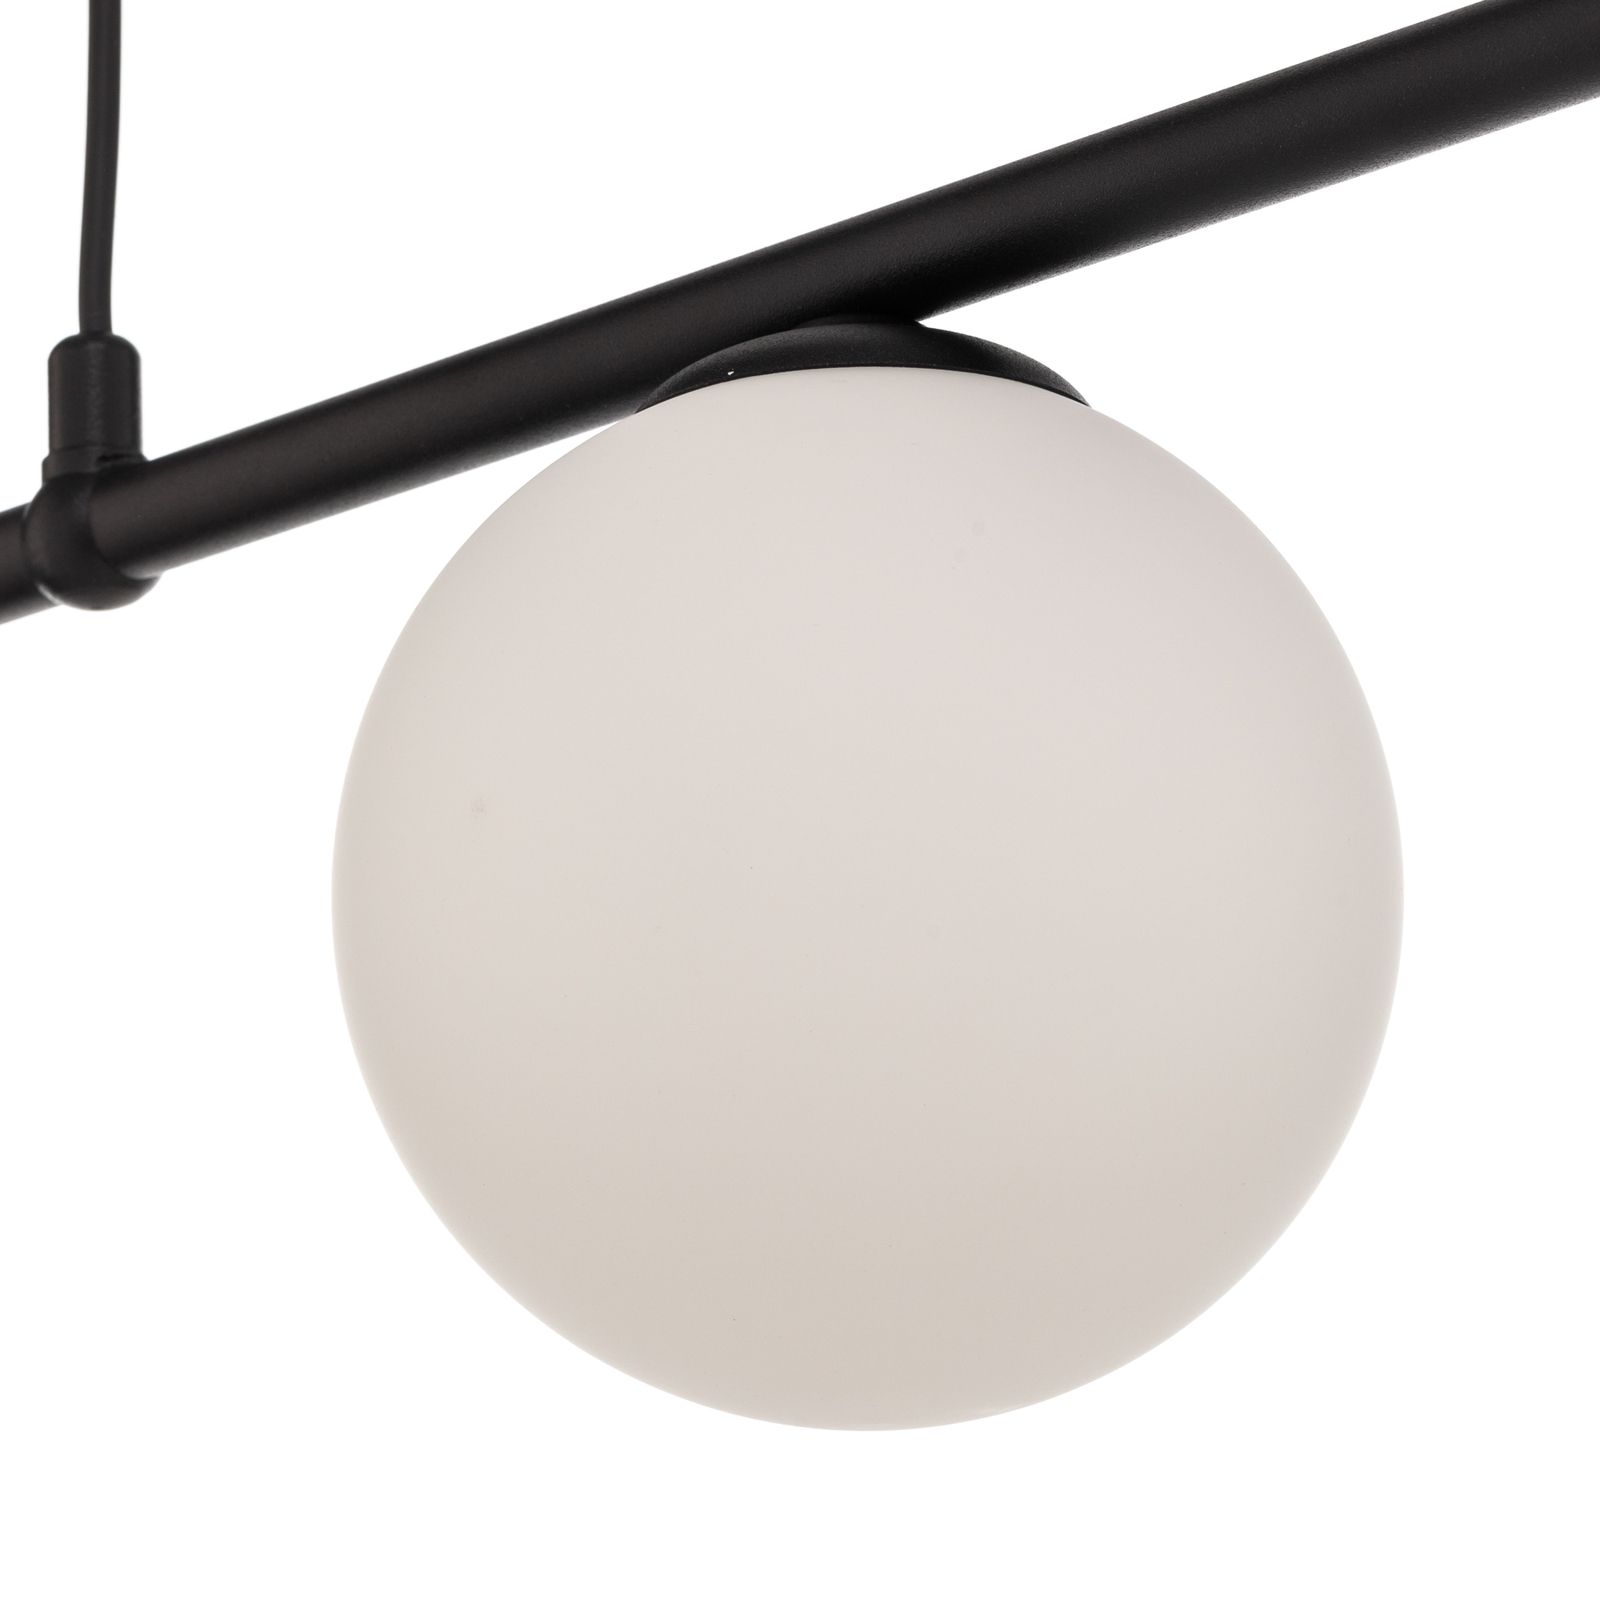 Hanglamp Alison zwart/wit, 4-lamps, balken, 154cm